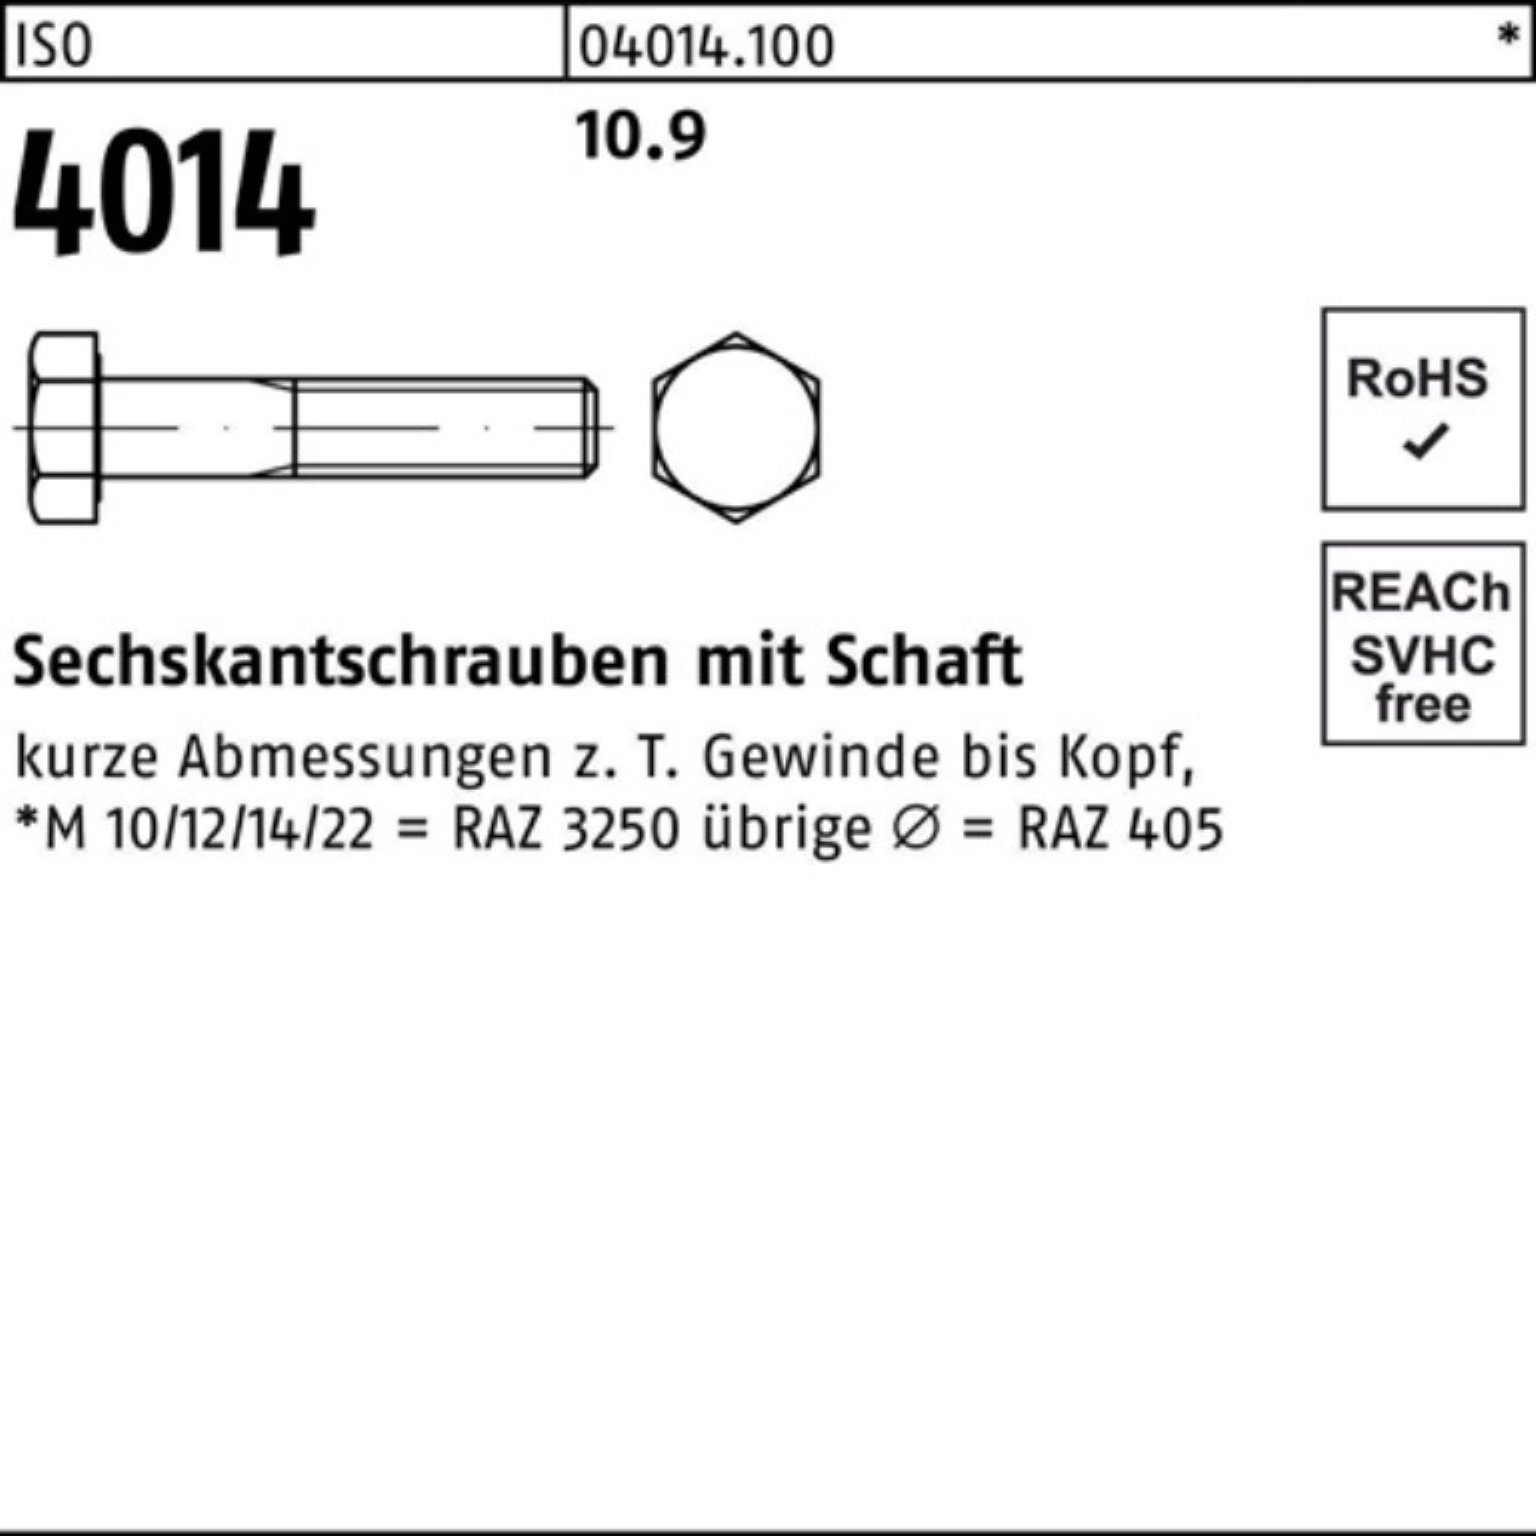 Sechskantschraube 4014 10.9 Bufab Sechskantschraube 390 Stück IS 100er Schaft 1 M20x Pack ISO